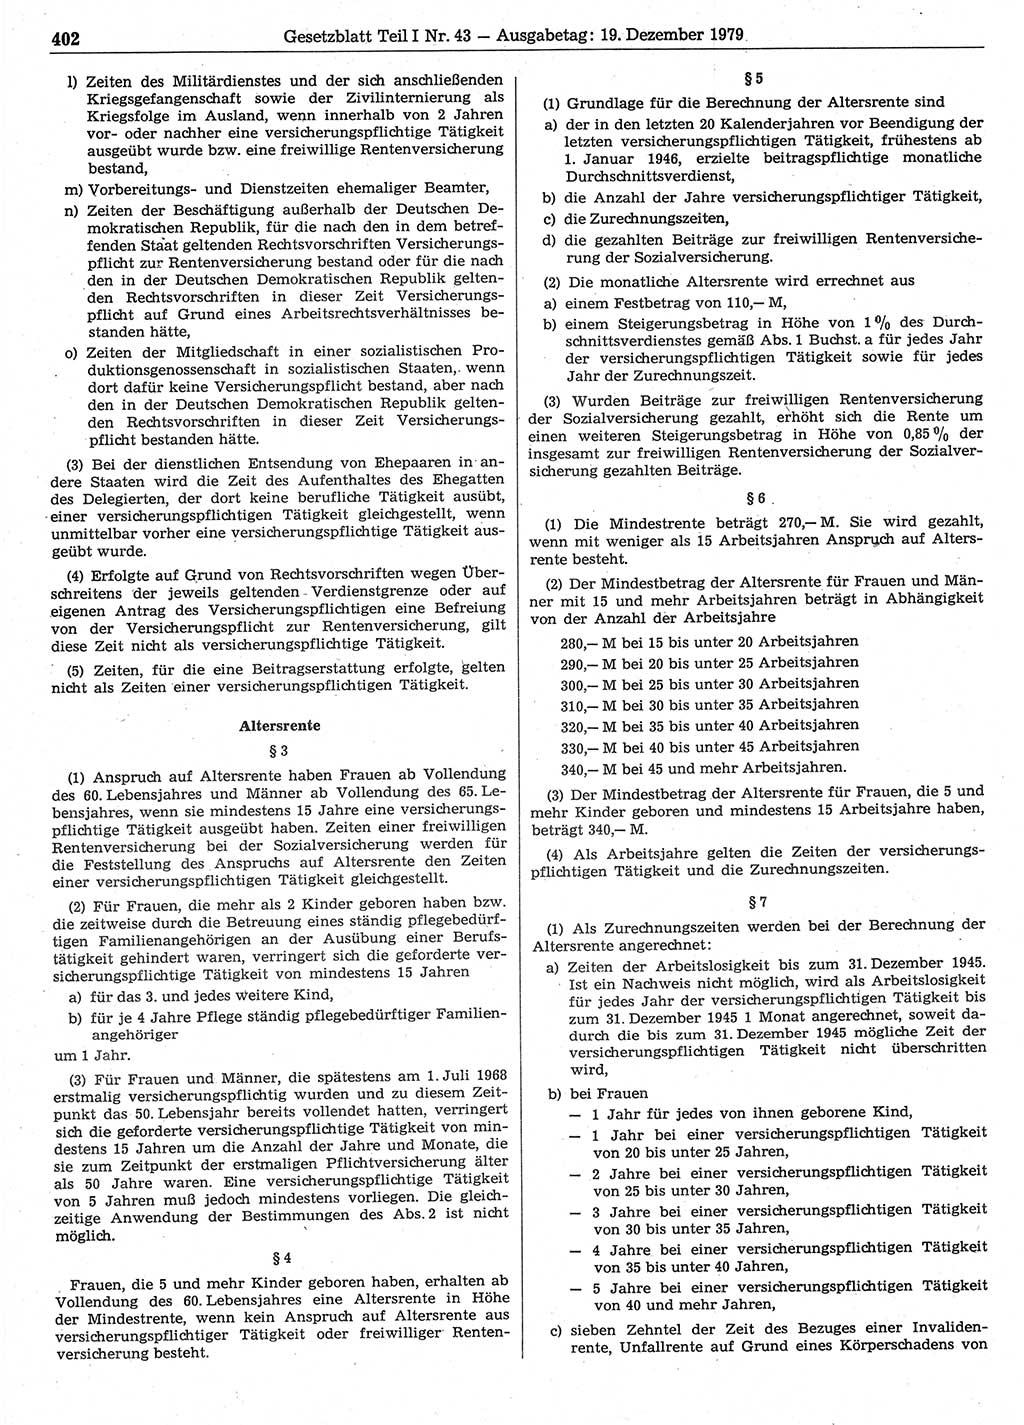 Gesetzblatt (GBl.) der Deutschen Demokratischen Republik (DDR) Teil Ⅰ 1979, Seite 402 (GBl. DDR Ⅰ 1979, S. 402)